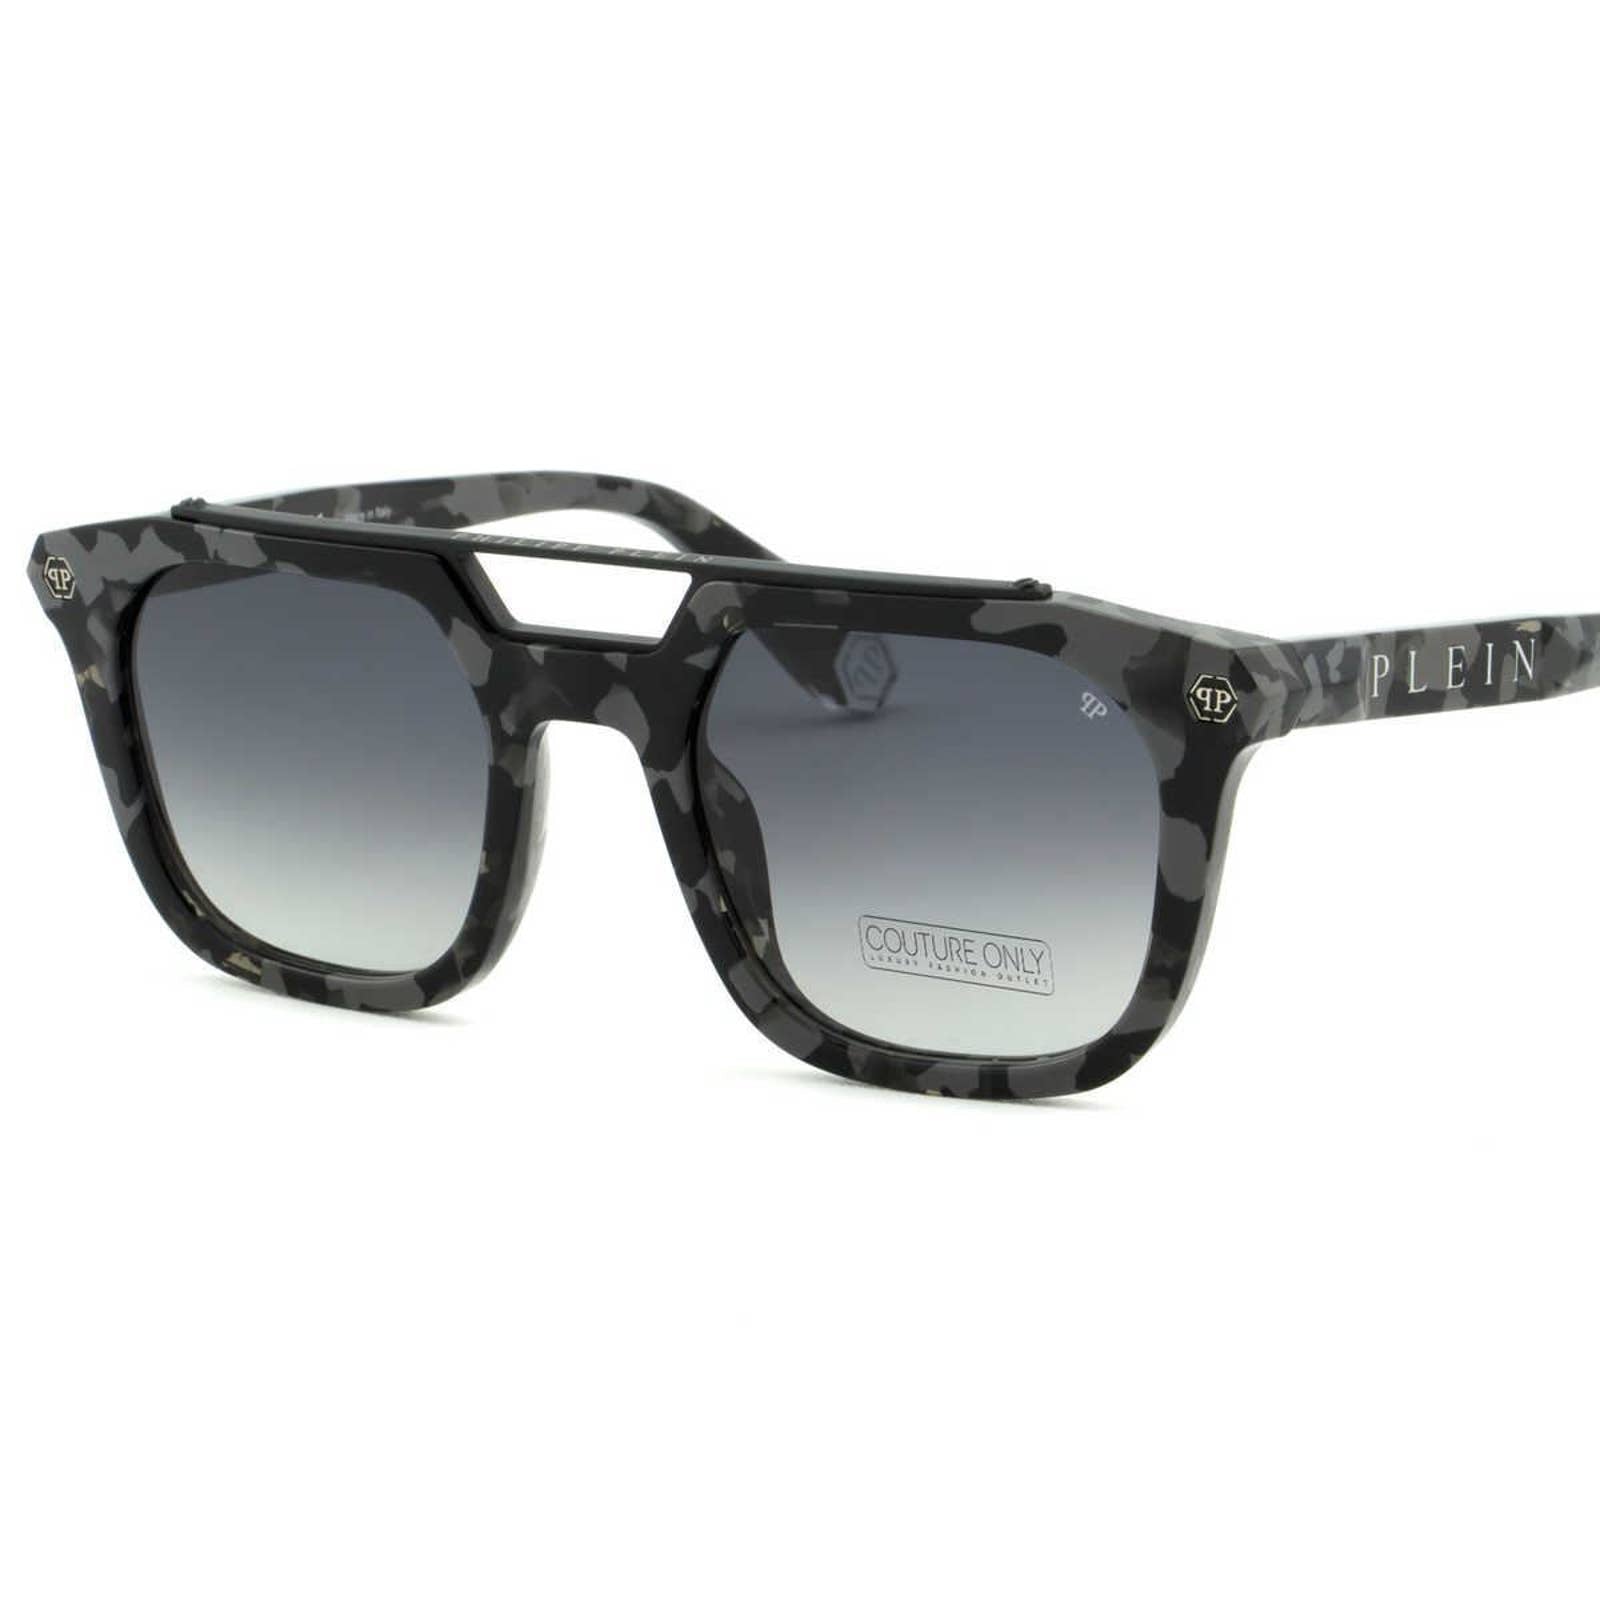 Men Camo Square Sunglasses SPP001M-0721 Gray Lens